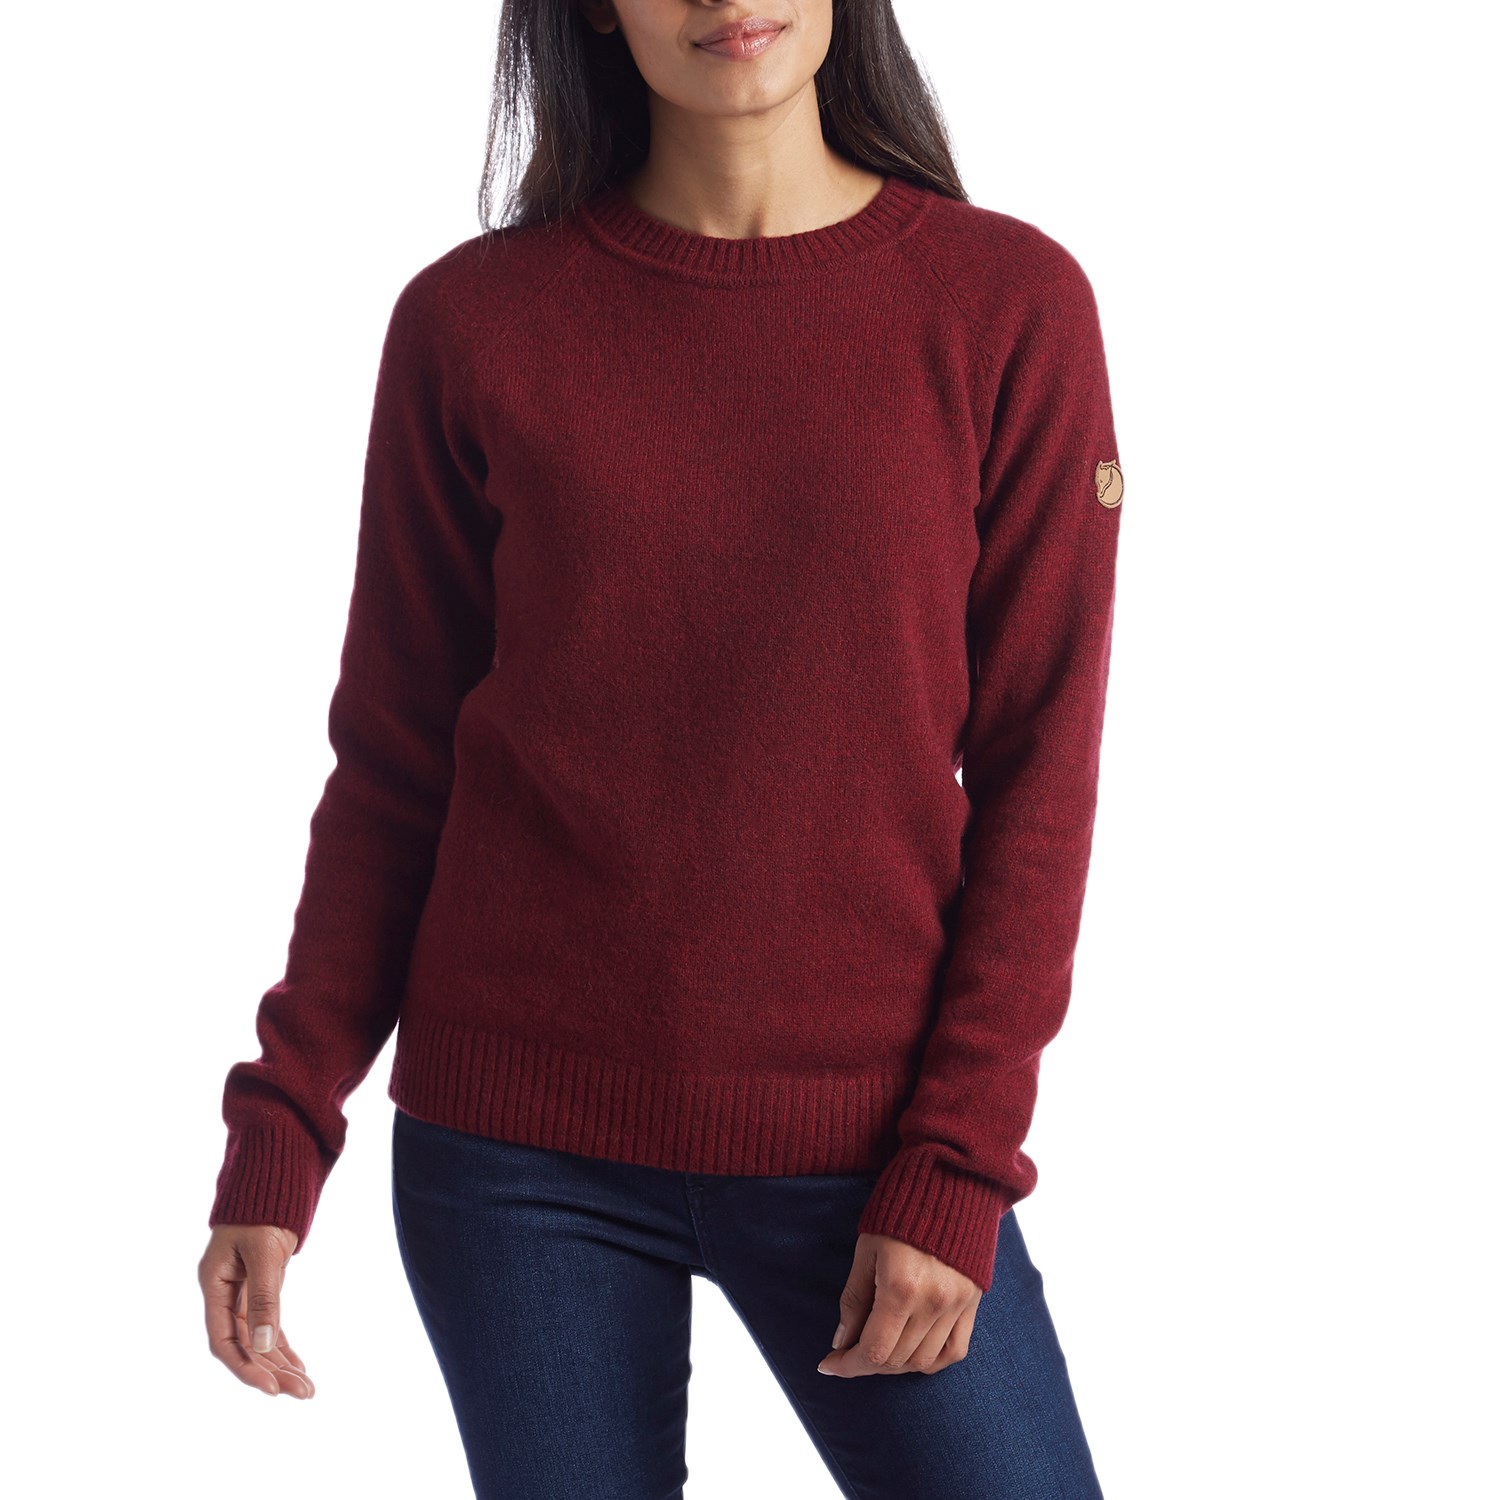 maroon sweater women's